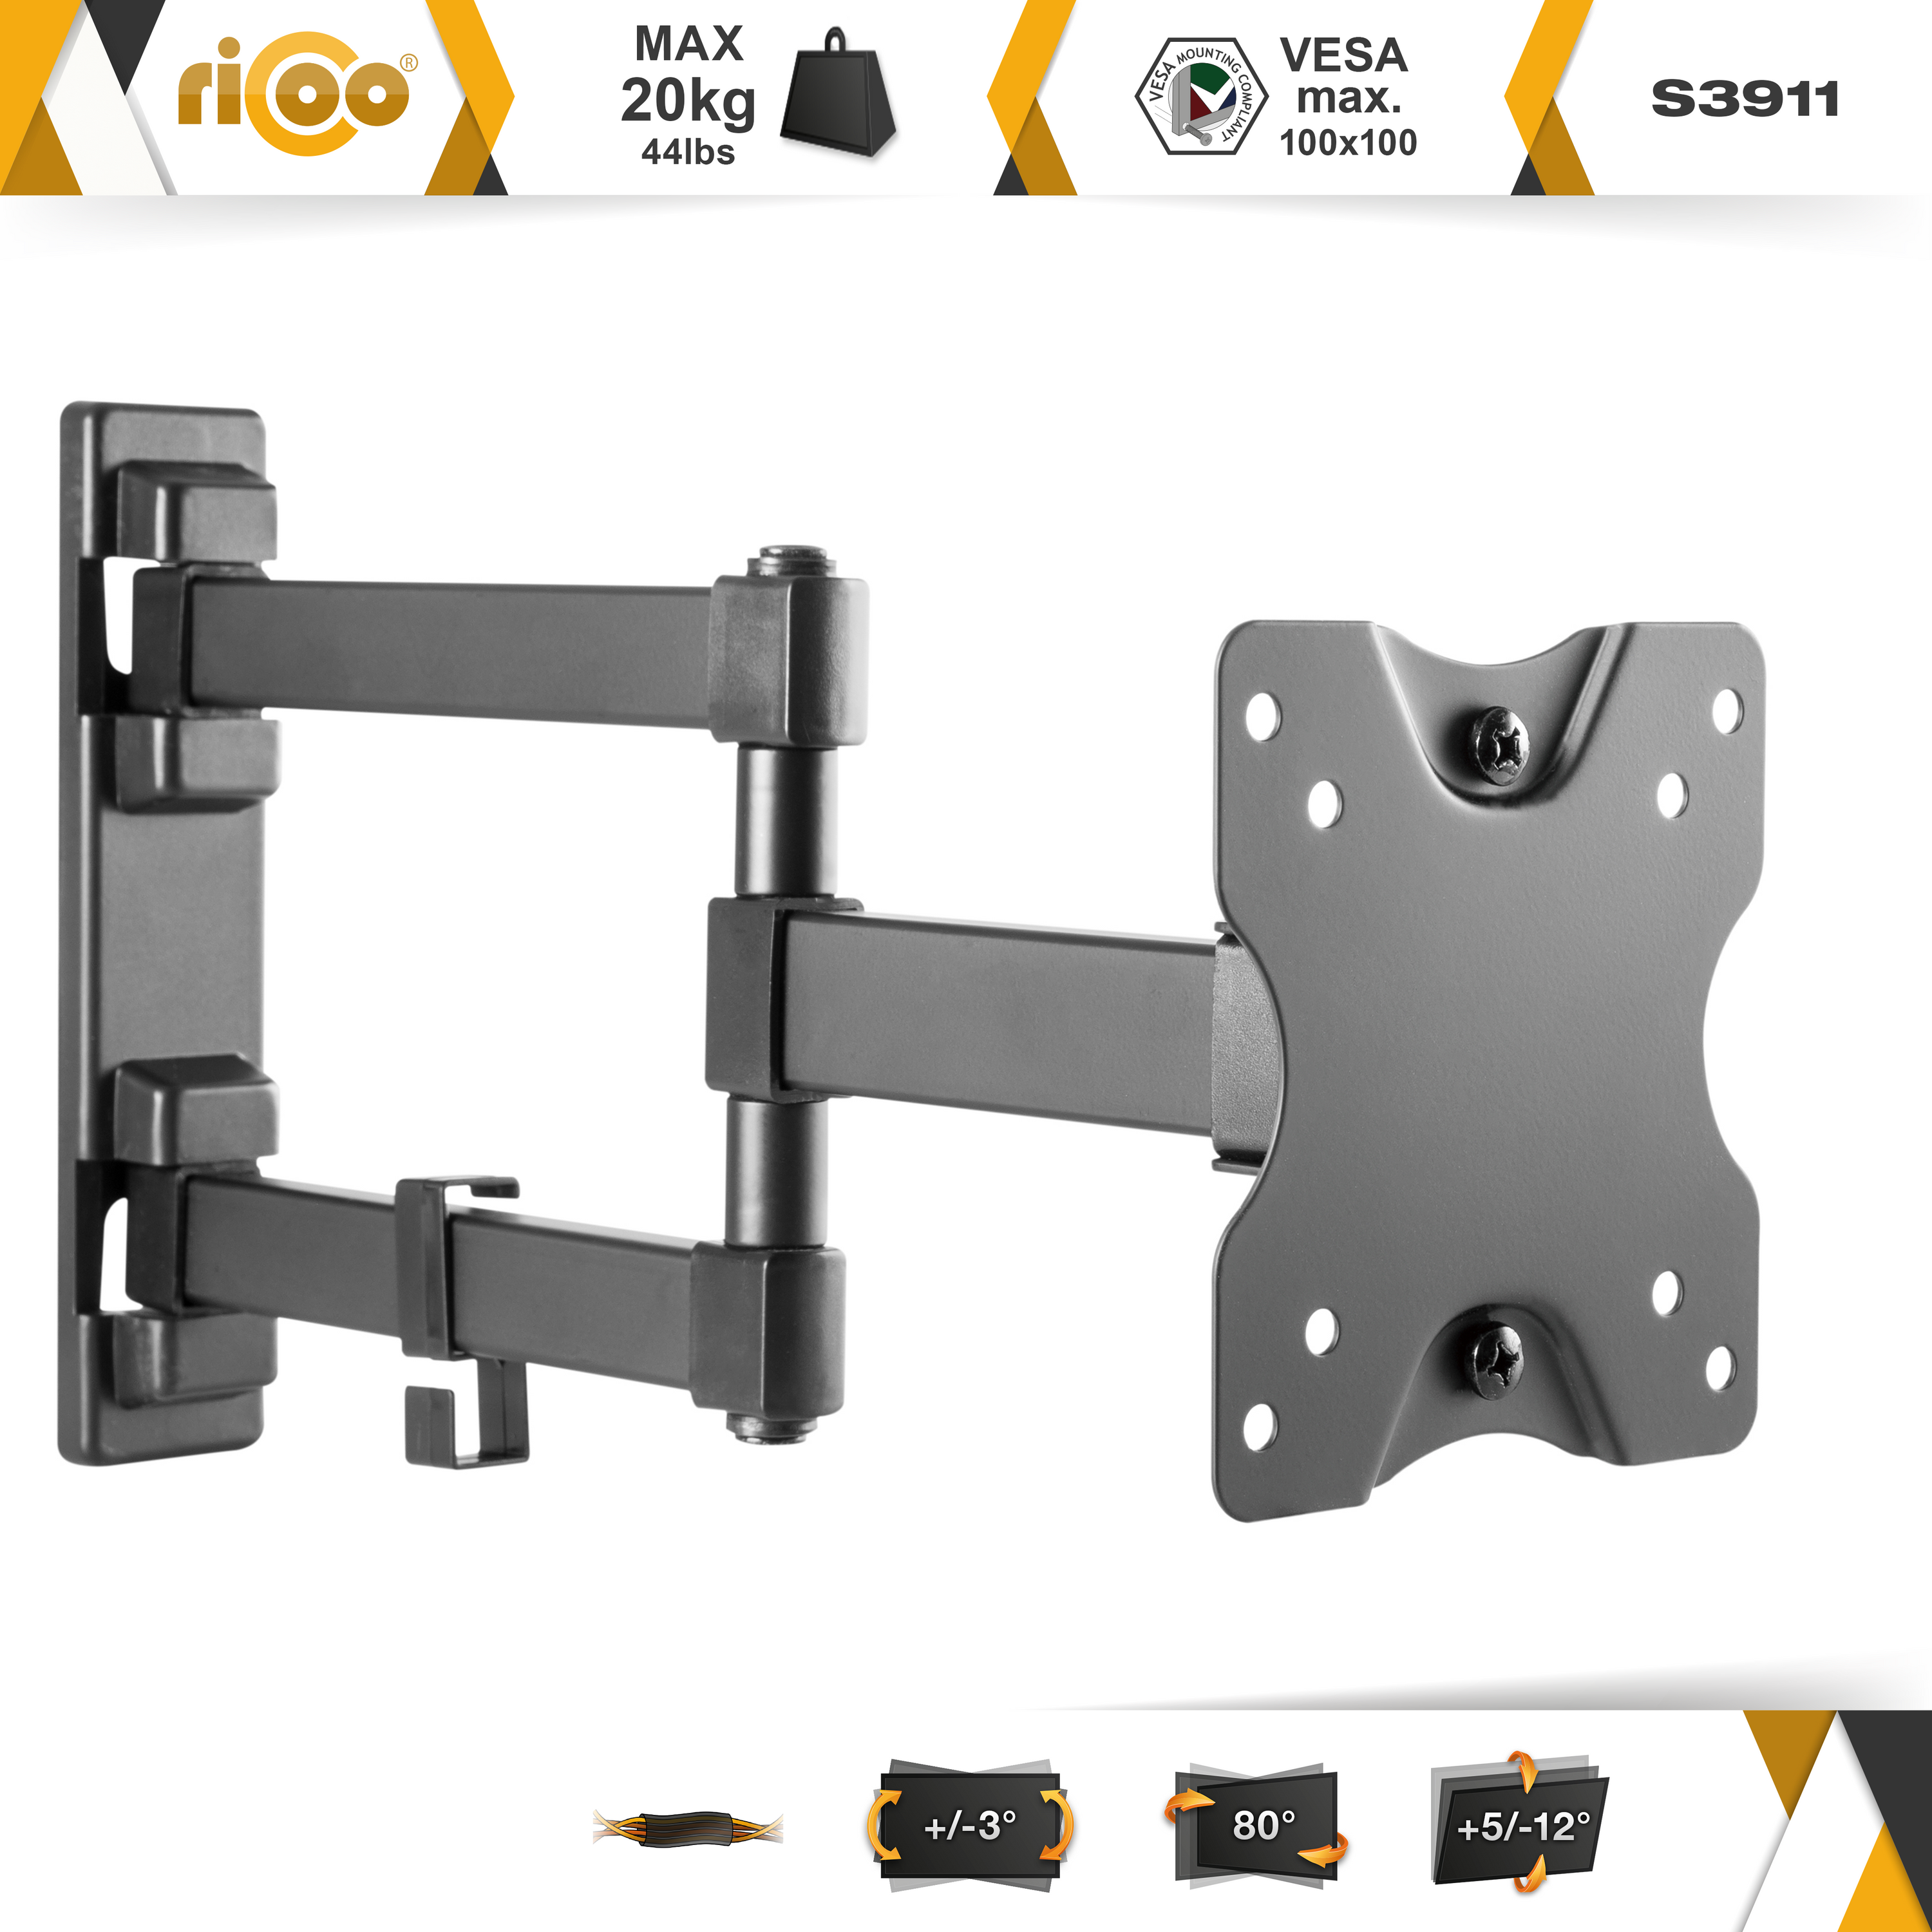 RICOO S3911 schwenkbar x 100 Halterung bis Schwarz neigbar TV curved 100 VESA universal Wandhalterung, ausziehbar Monitor Wand